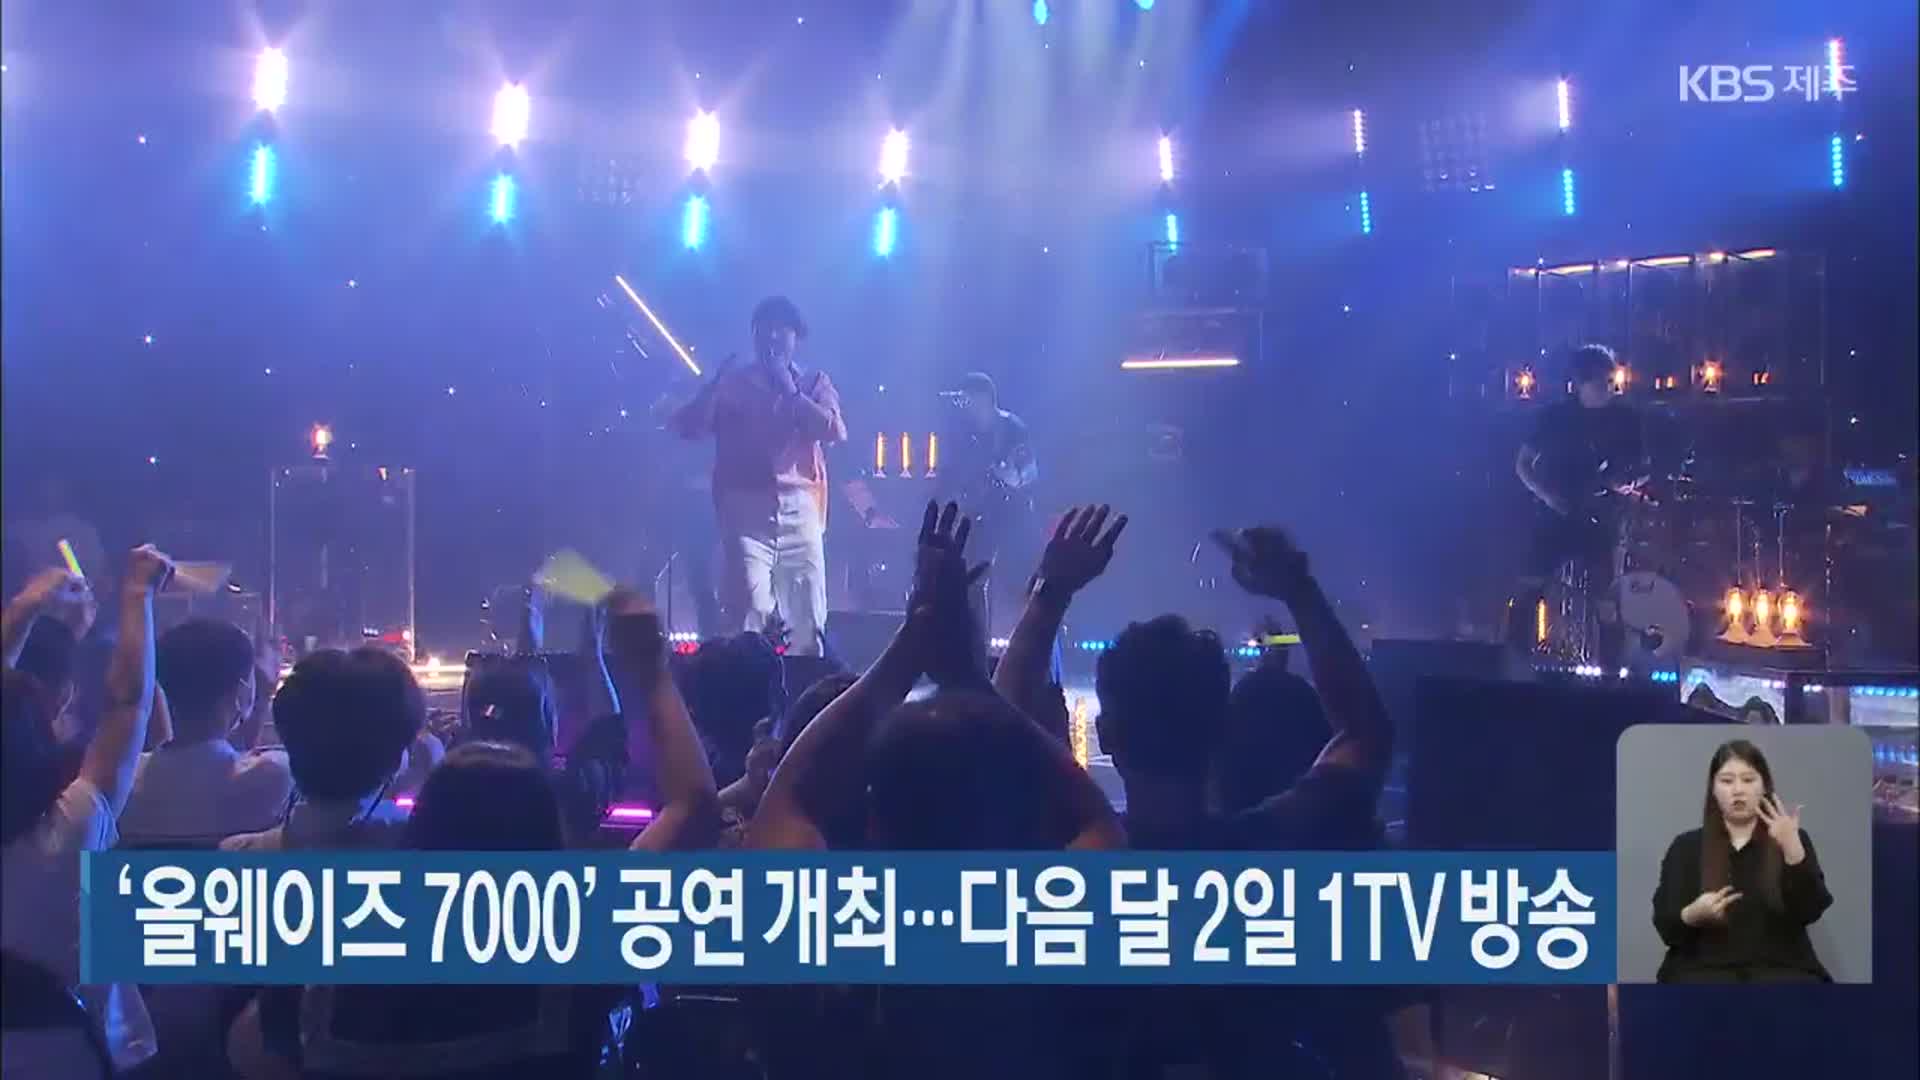 ‘올웨이즈 7000’ 공연 개최…다음 달 2일 1TV 방송